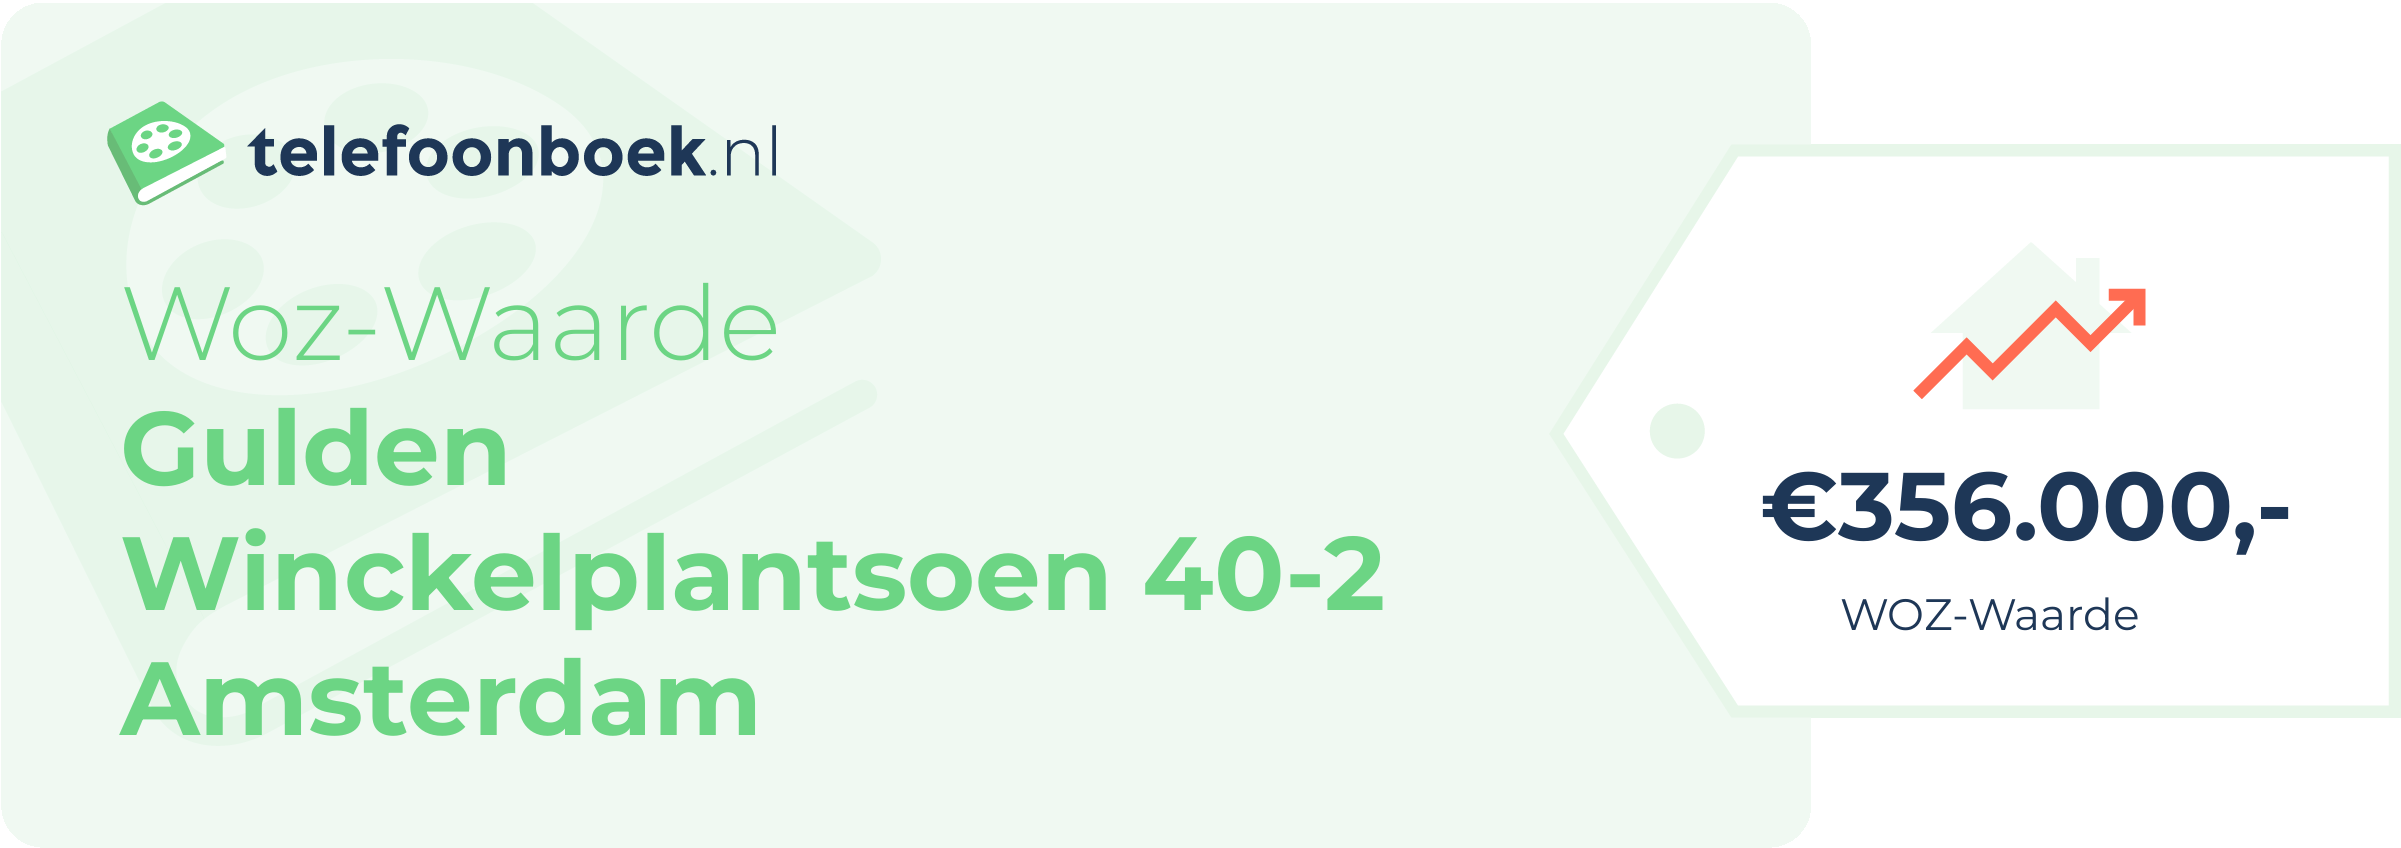 WOZ-waarde Gulden Winckelplantsoen 40-2 Amsterdam